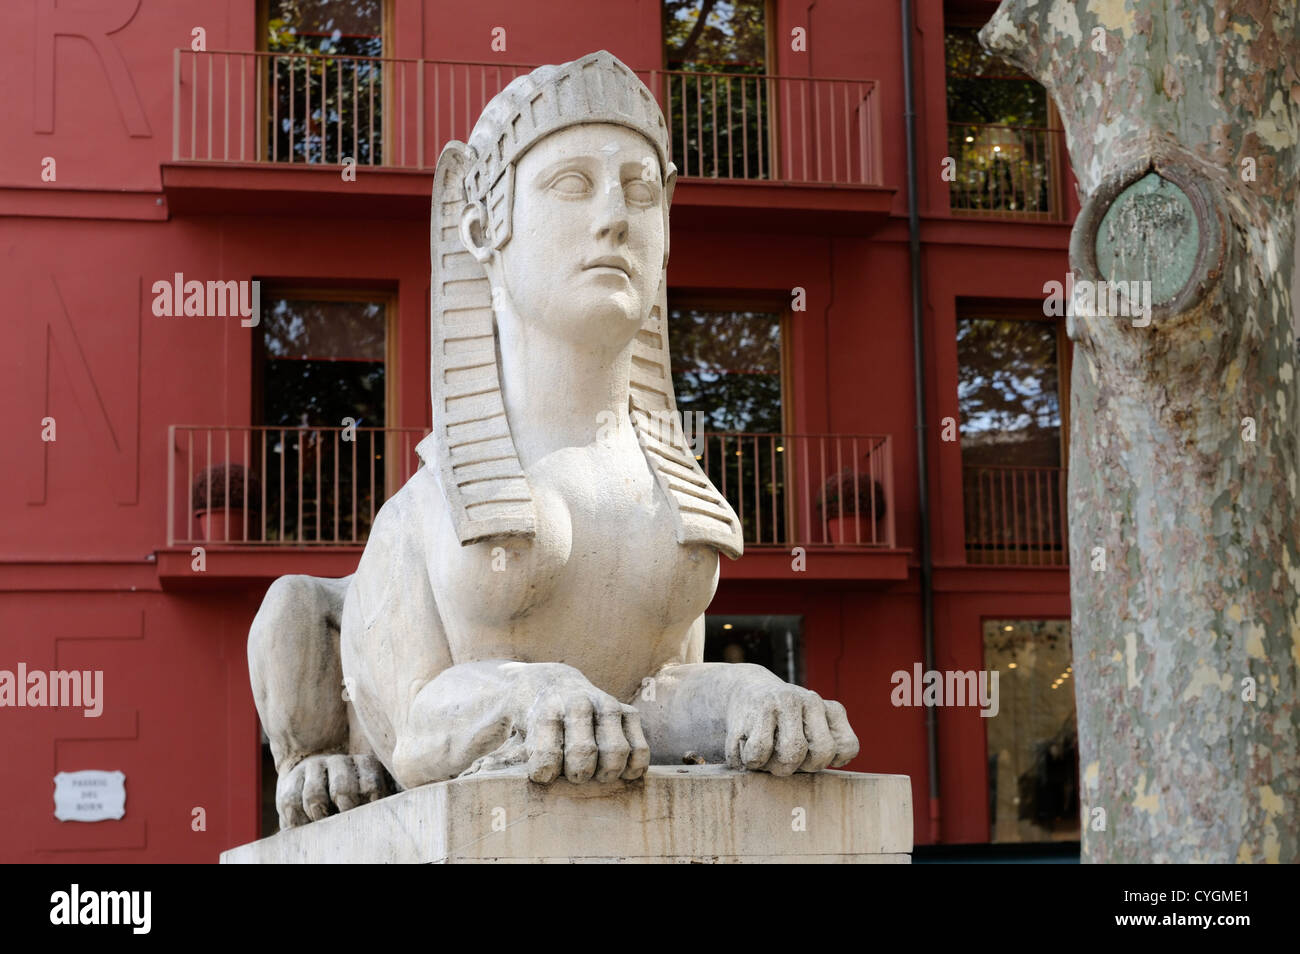 Sphinx, Passeig del Born, Palma, Mallorca, Spanien, Europa. | Sphinx, Passeig del Born, Palma, Majorca, Spain, Europe. Stock Photo